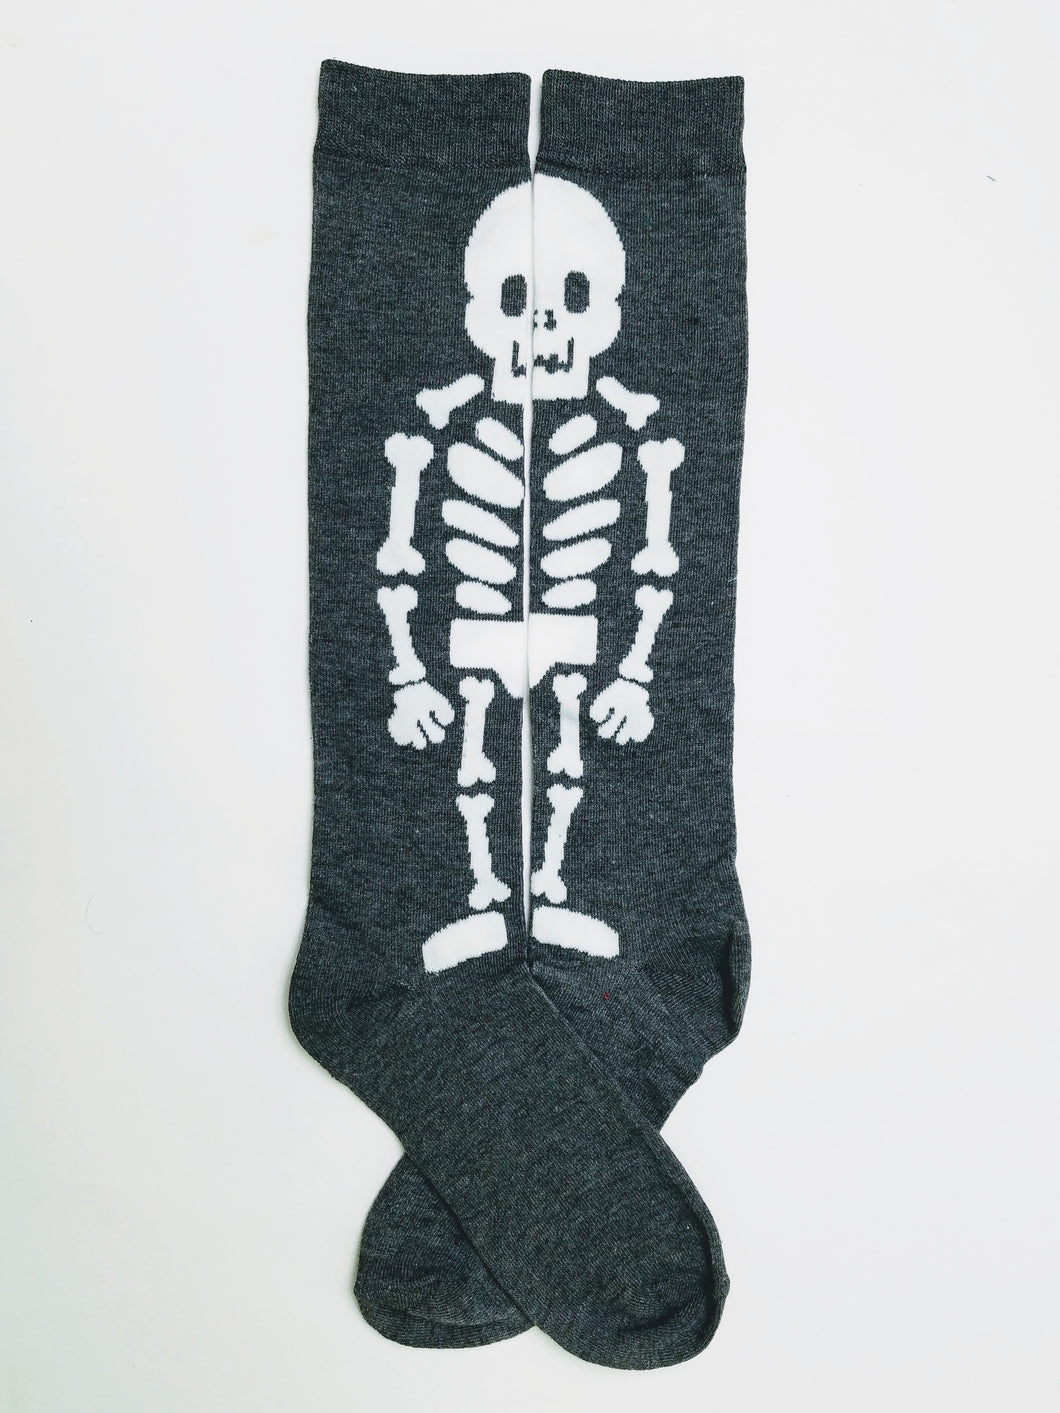 Skeleton Knee High Socks